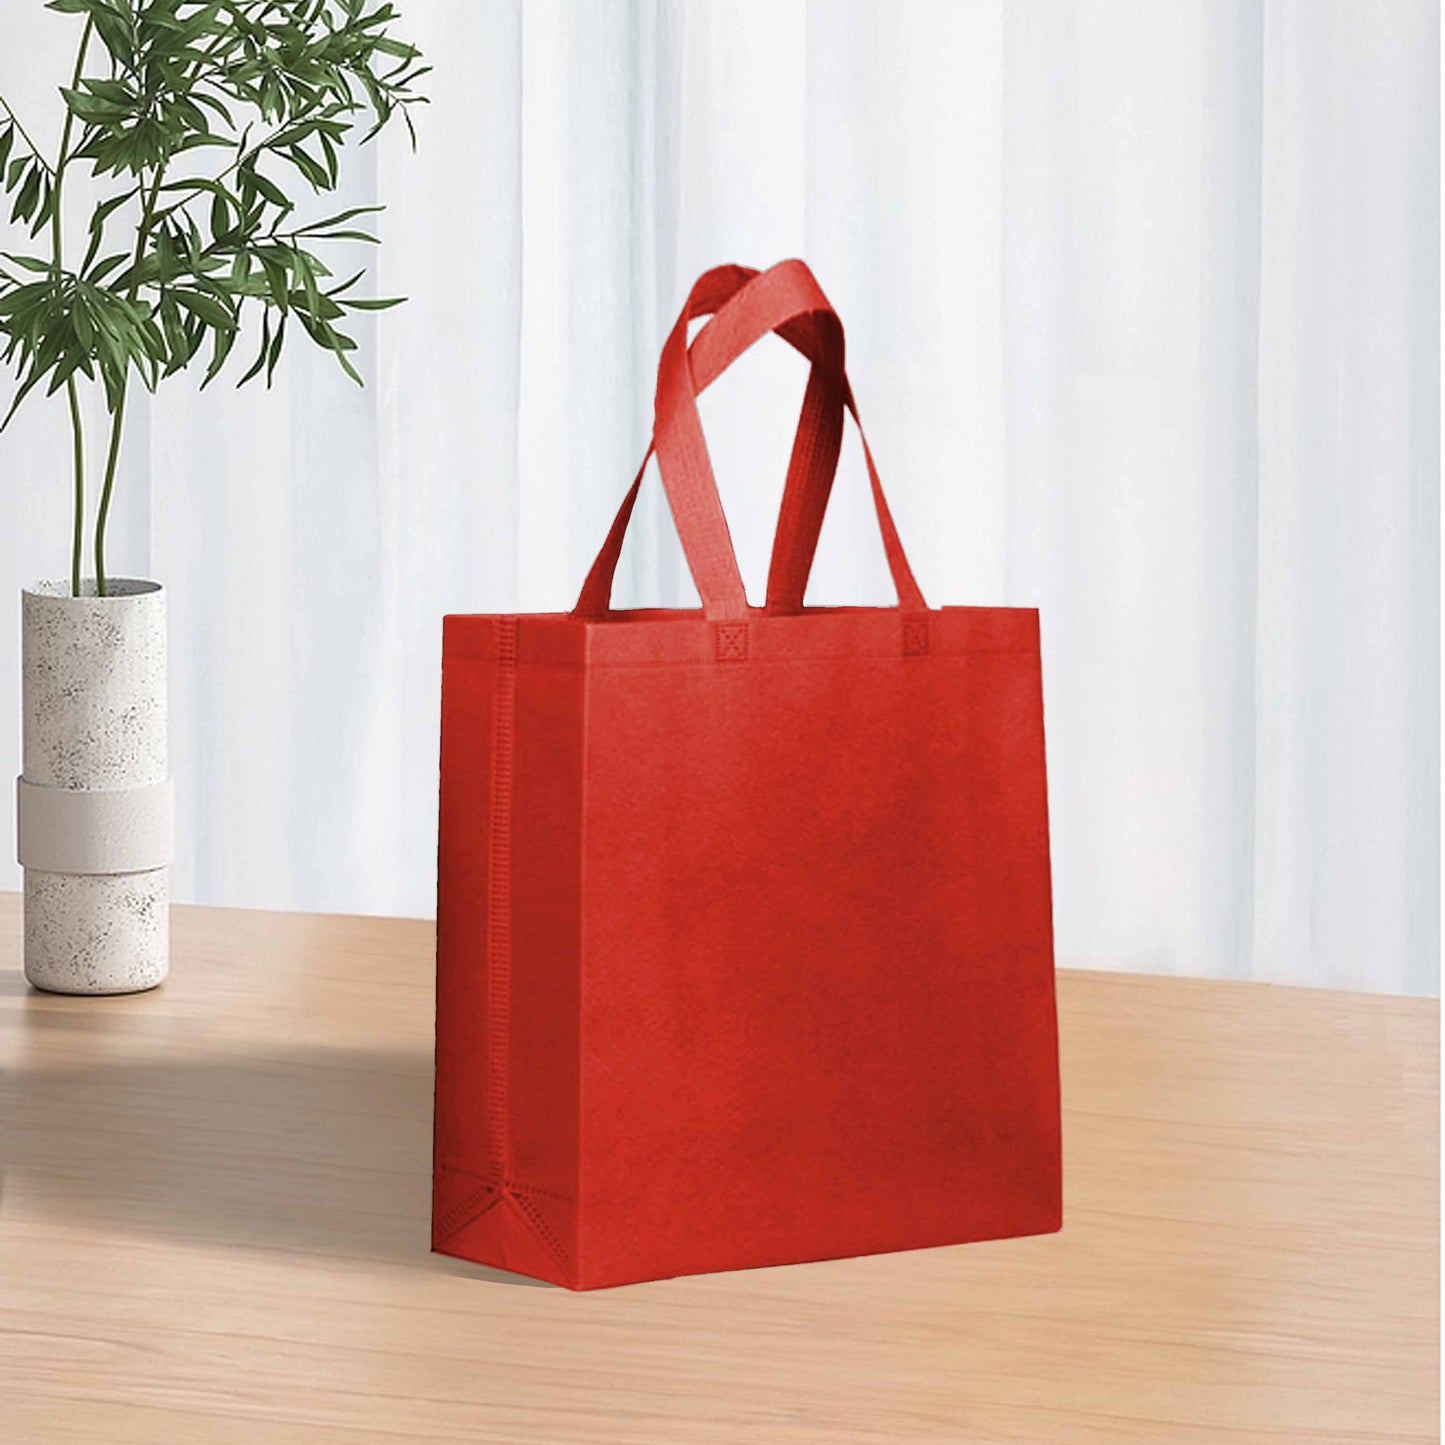 Reusable Non-Woven Shopping Bag - 10"W x 4"D x 10"H